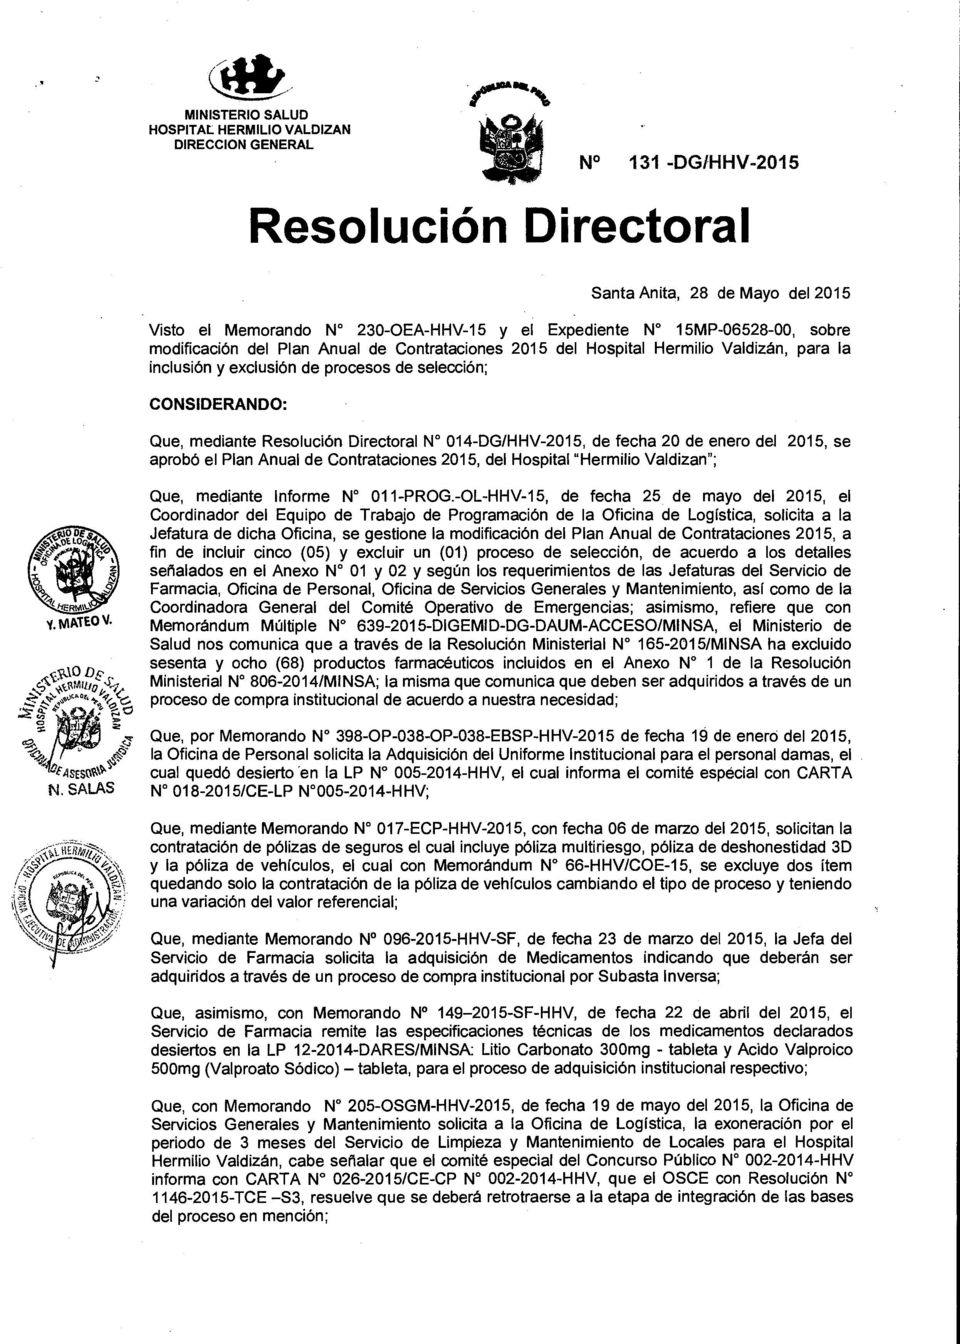 W 014-DG/HHV-2015, de fecha 20 de enero del 2015, se aprobó el Plan Anual de Contrataciones 2015, del Hospital "Hermilio Valdizan"; Que, mediante Informe No 011-PROG.